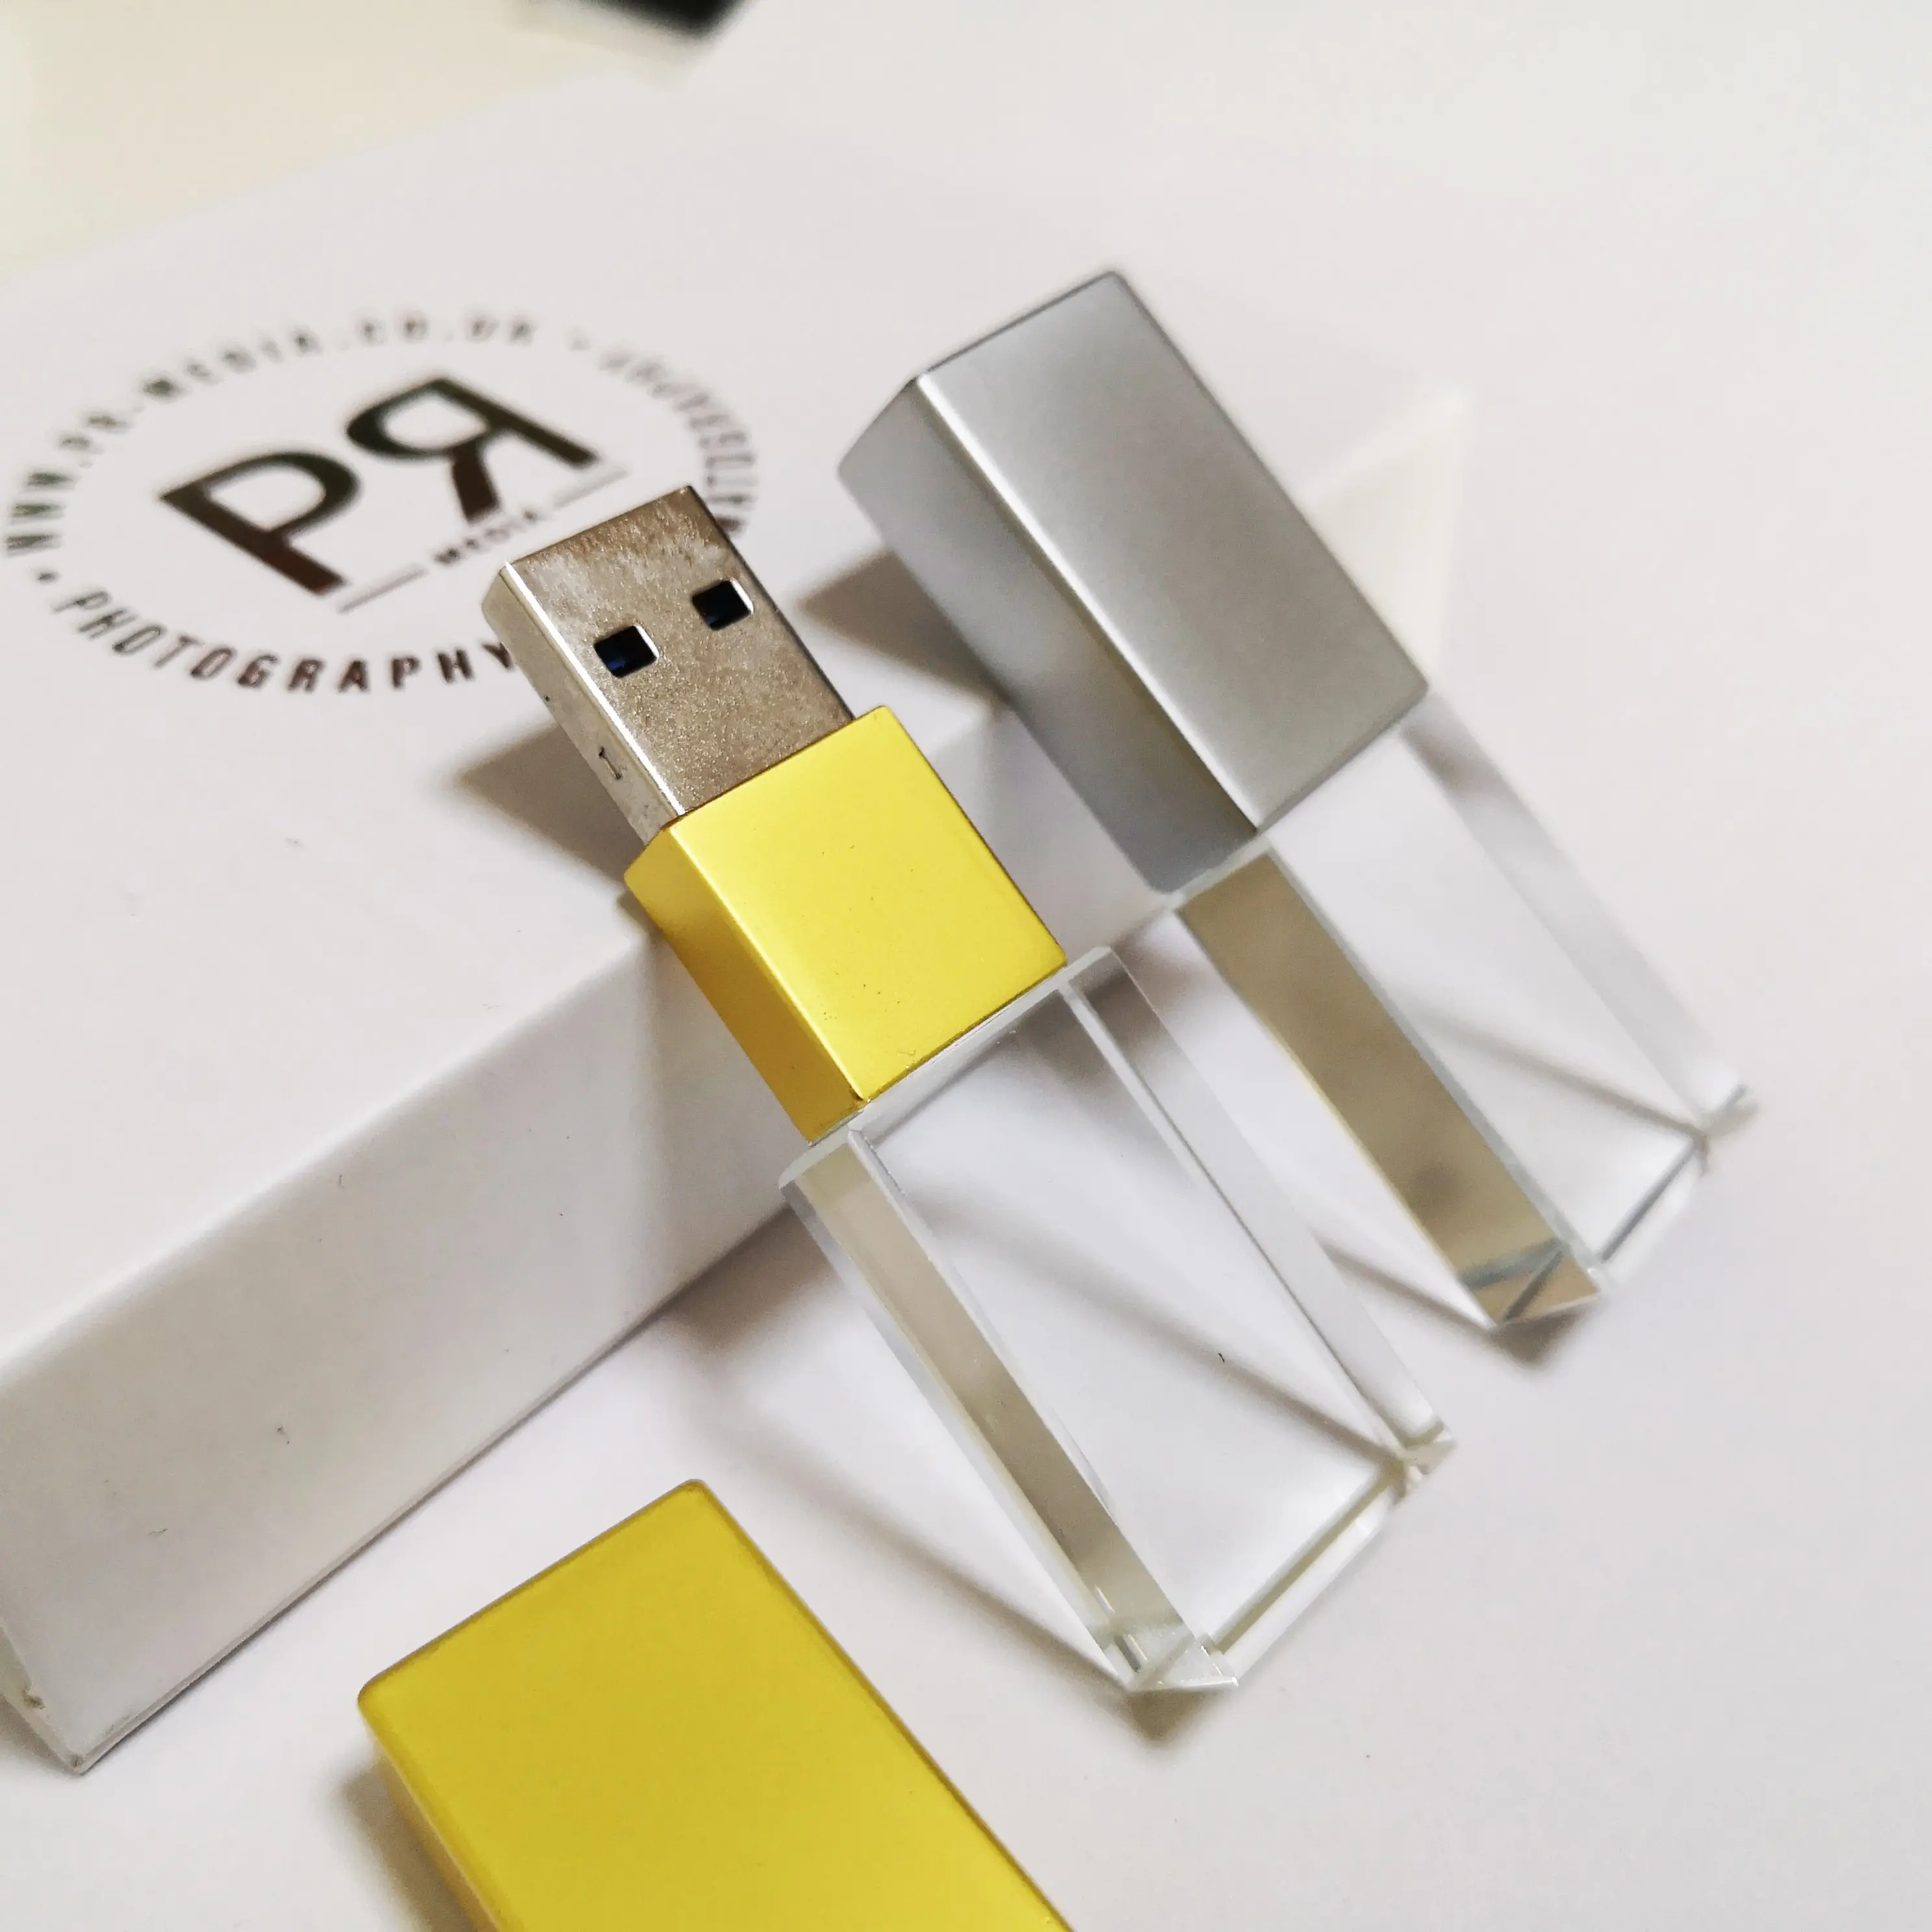 Bán Sỉ Ổ USB Flash Pha Lê Thủy Tinh Mờ Màu Vàng Hồng Ổ USB USB3.0 64GB 128GB Kèm Hộp Quà Tặng USB Đóng Gói